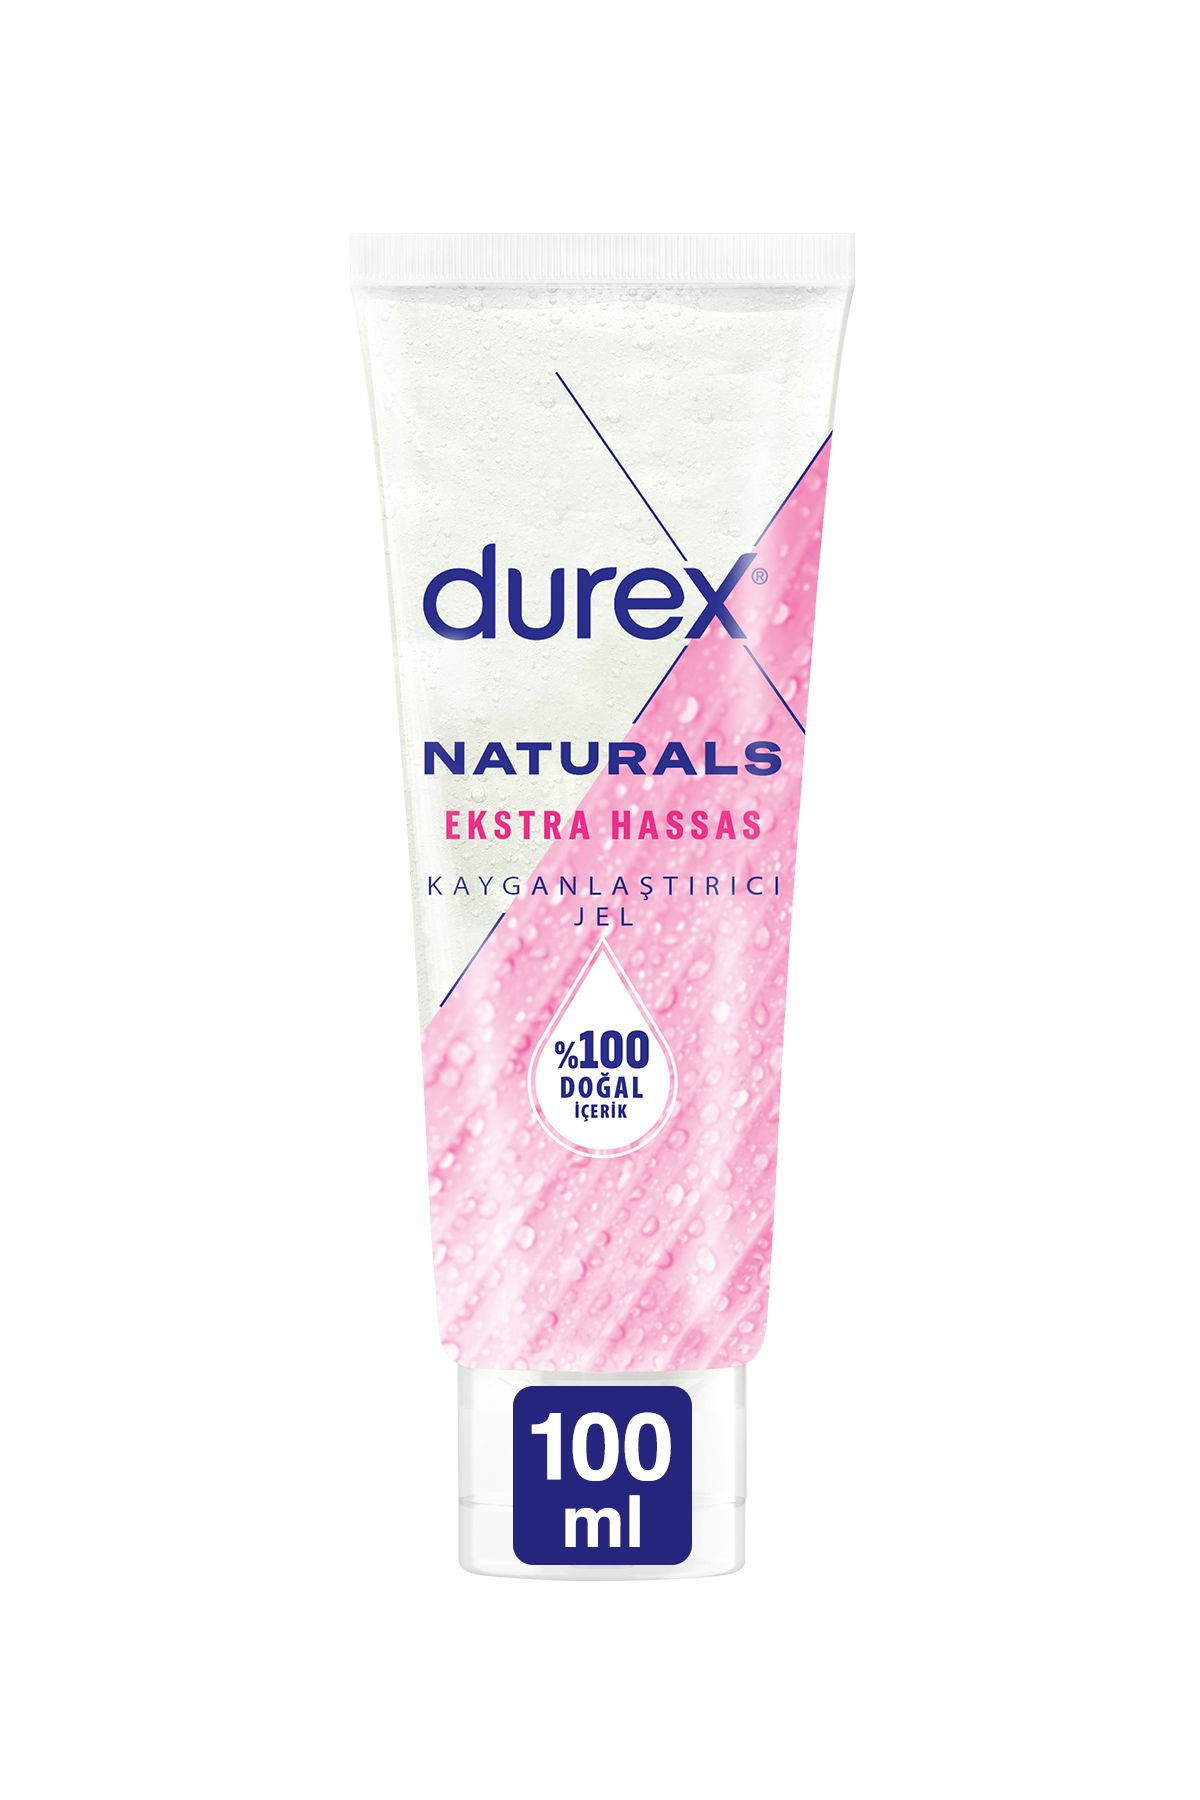 Durex Naturals Extra Hassas Kayganlaştırıcı Jel 100 ml